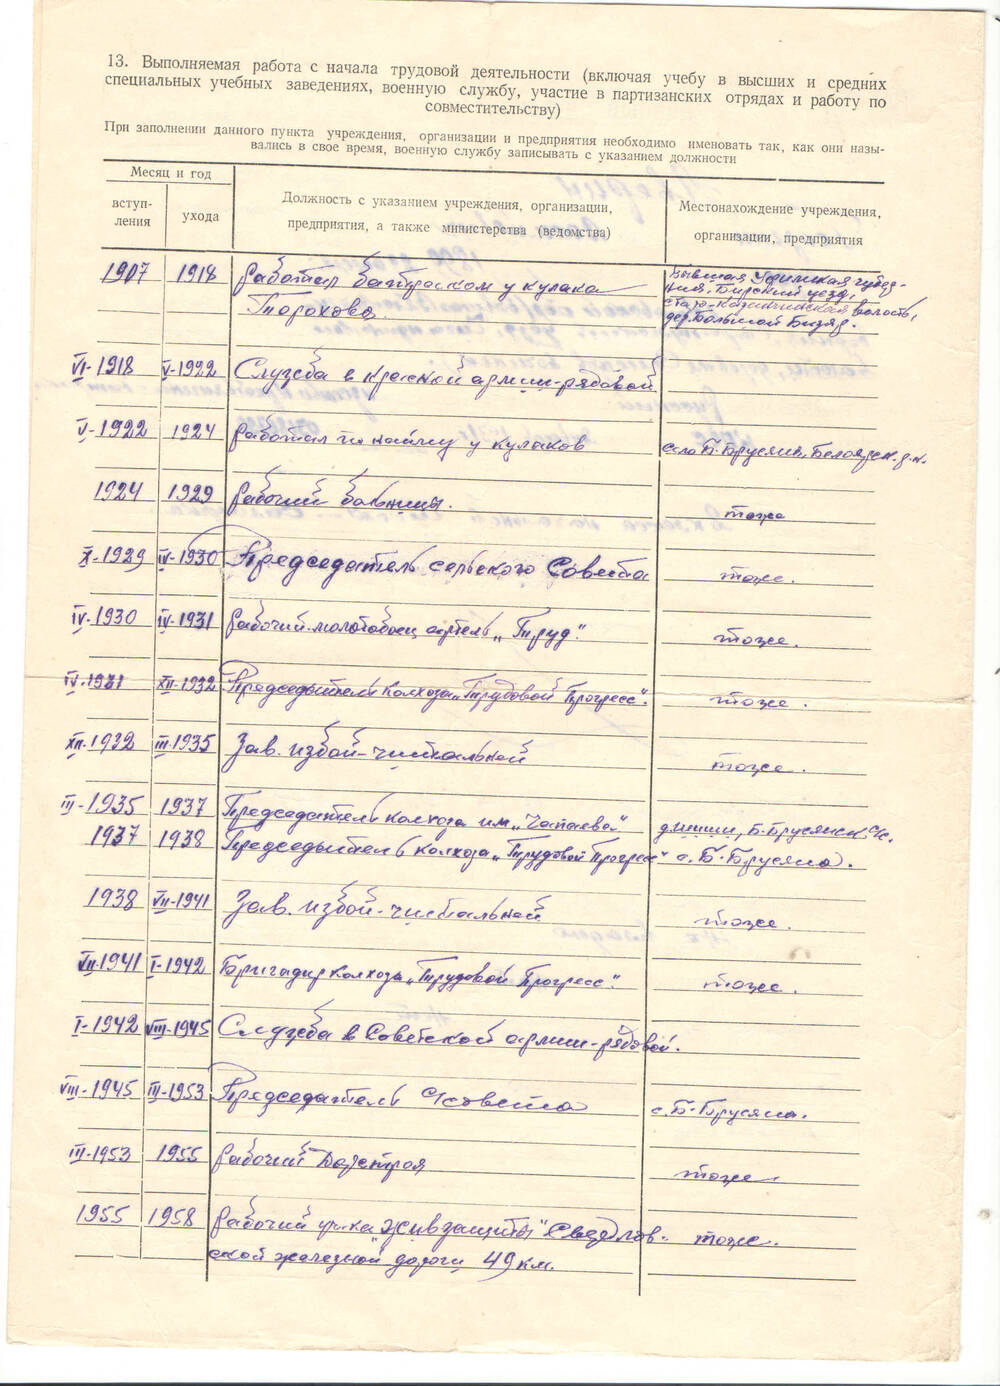 Листок
личный  по  учету  кадров  Аверина  Георгия  Васильевича,  1899 года  рождения